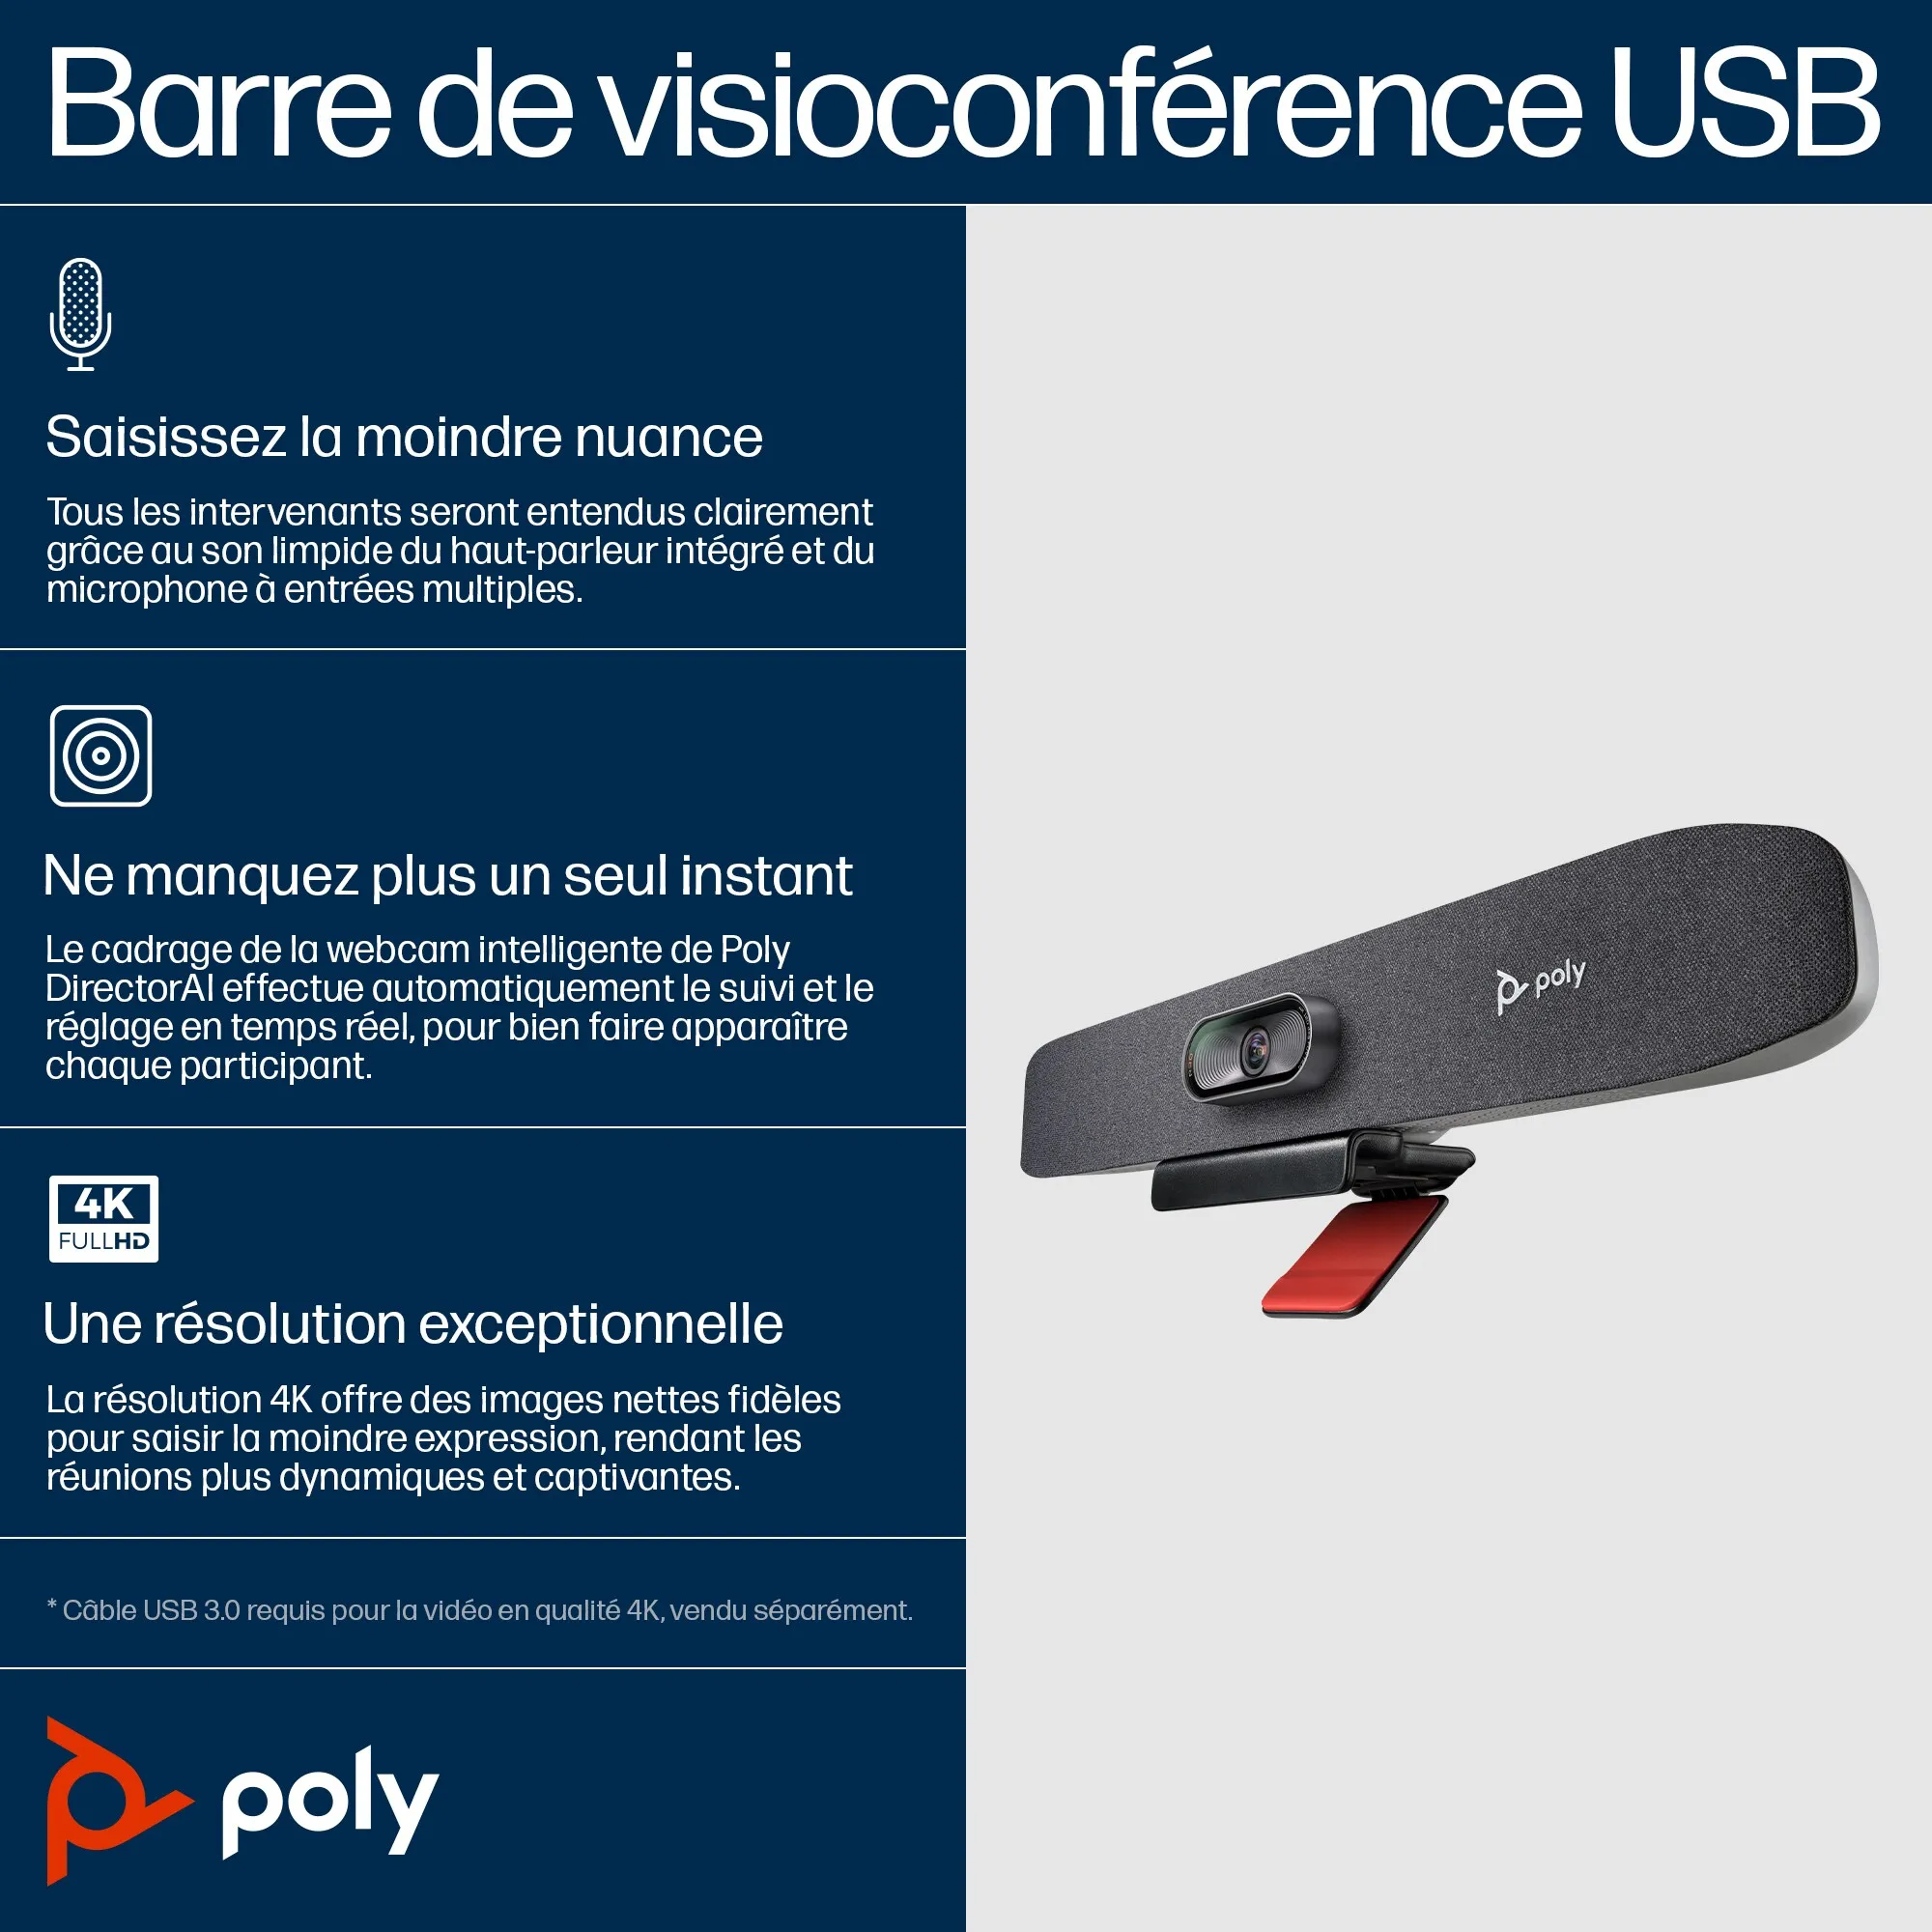 Vente POLY Barre de visioconférence USB Poly Studio R30 POLY au meilleur prix - visuel 8